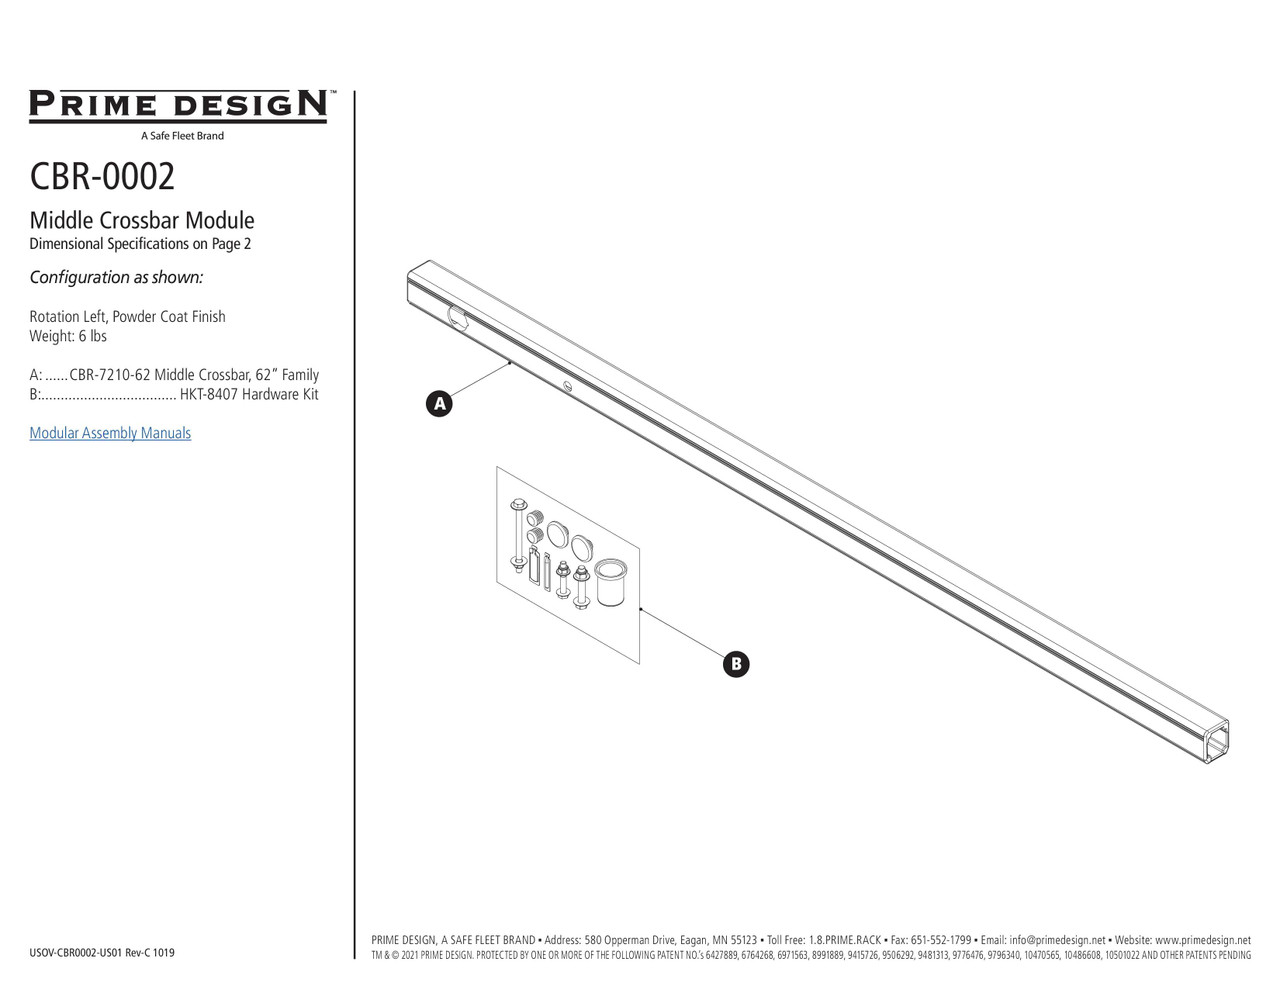 LadderProducts.com | Prime Design ErgoRack Middle CrossBar Kit 62" CBR-0002